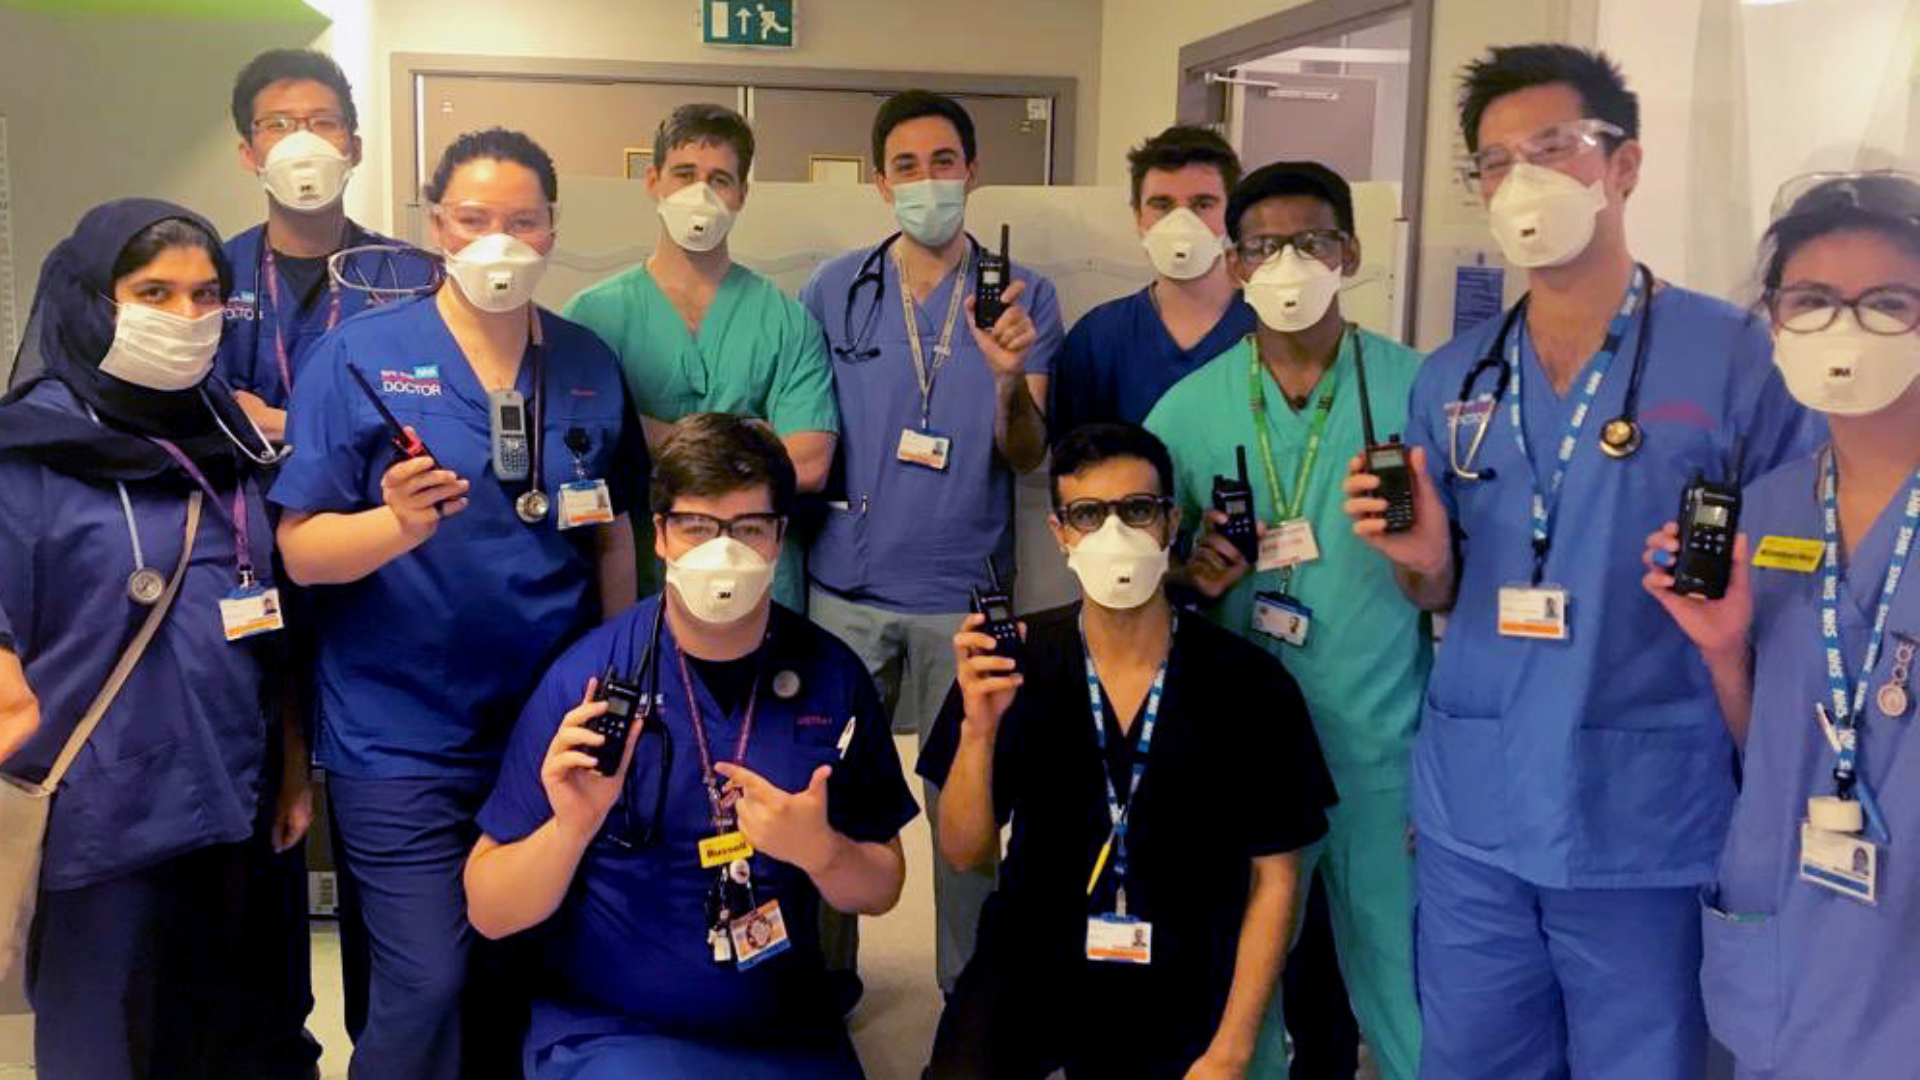 NHS staff with walkie-talkies